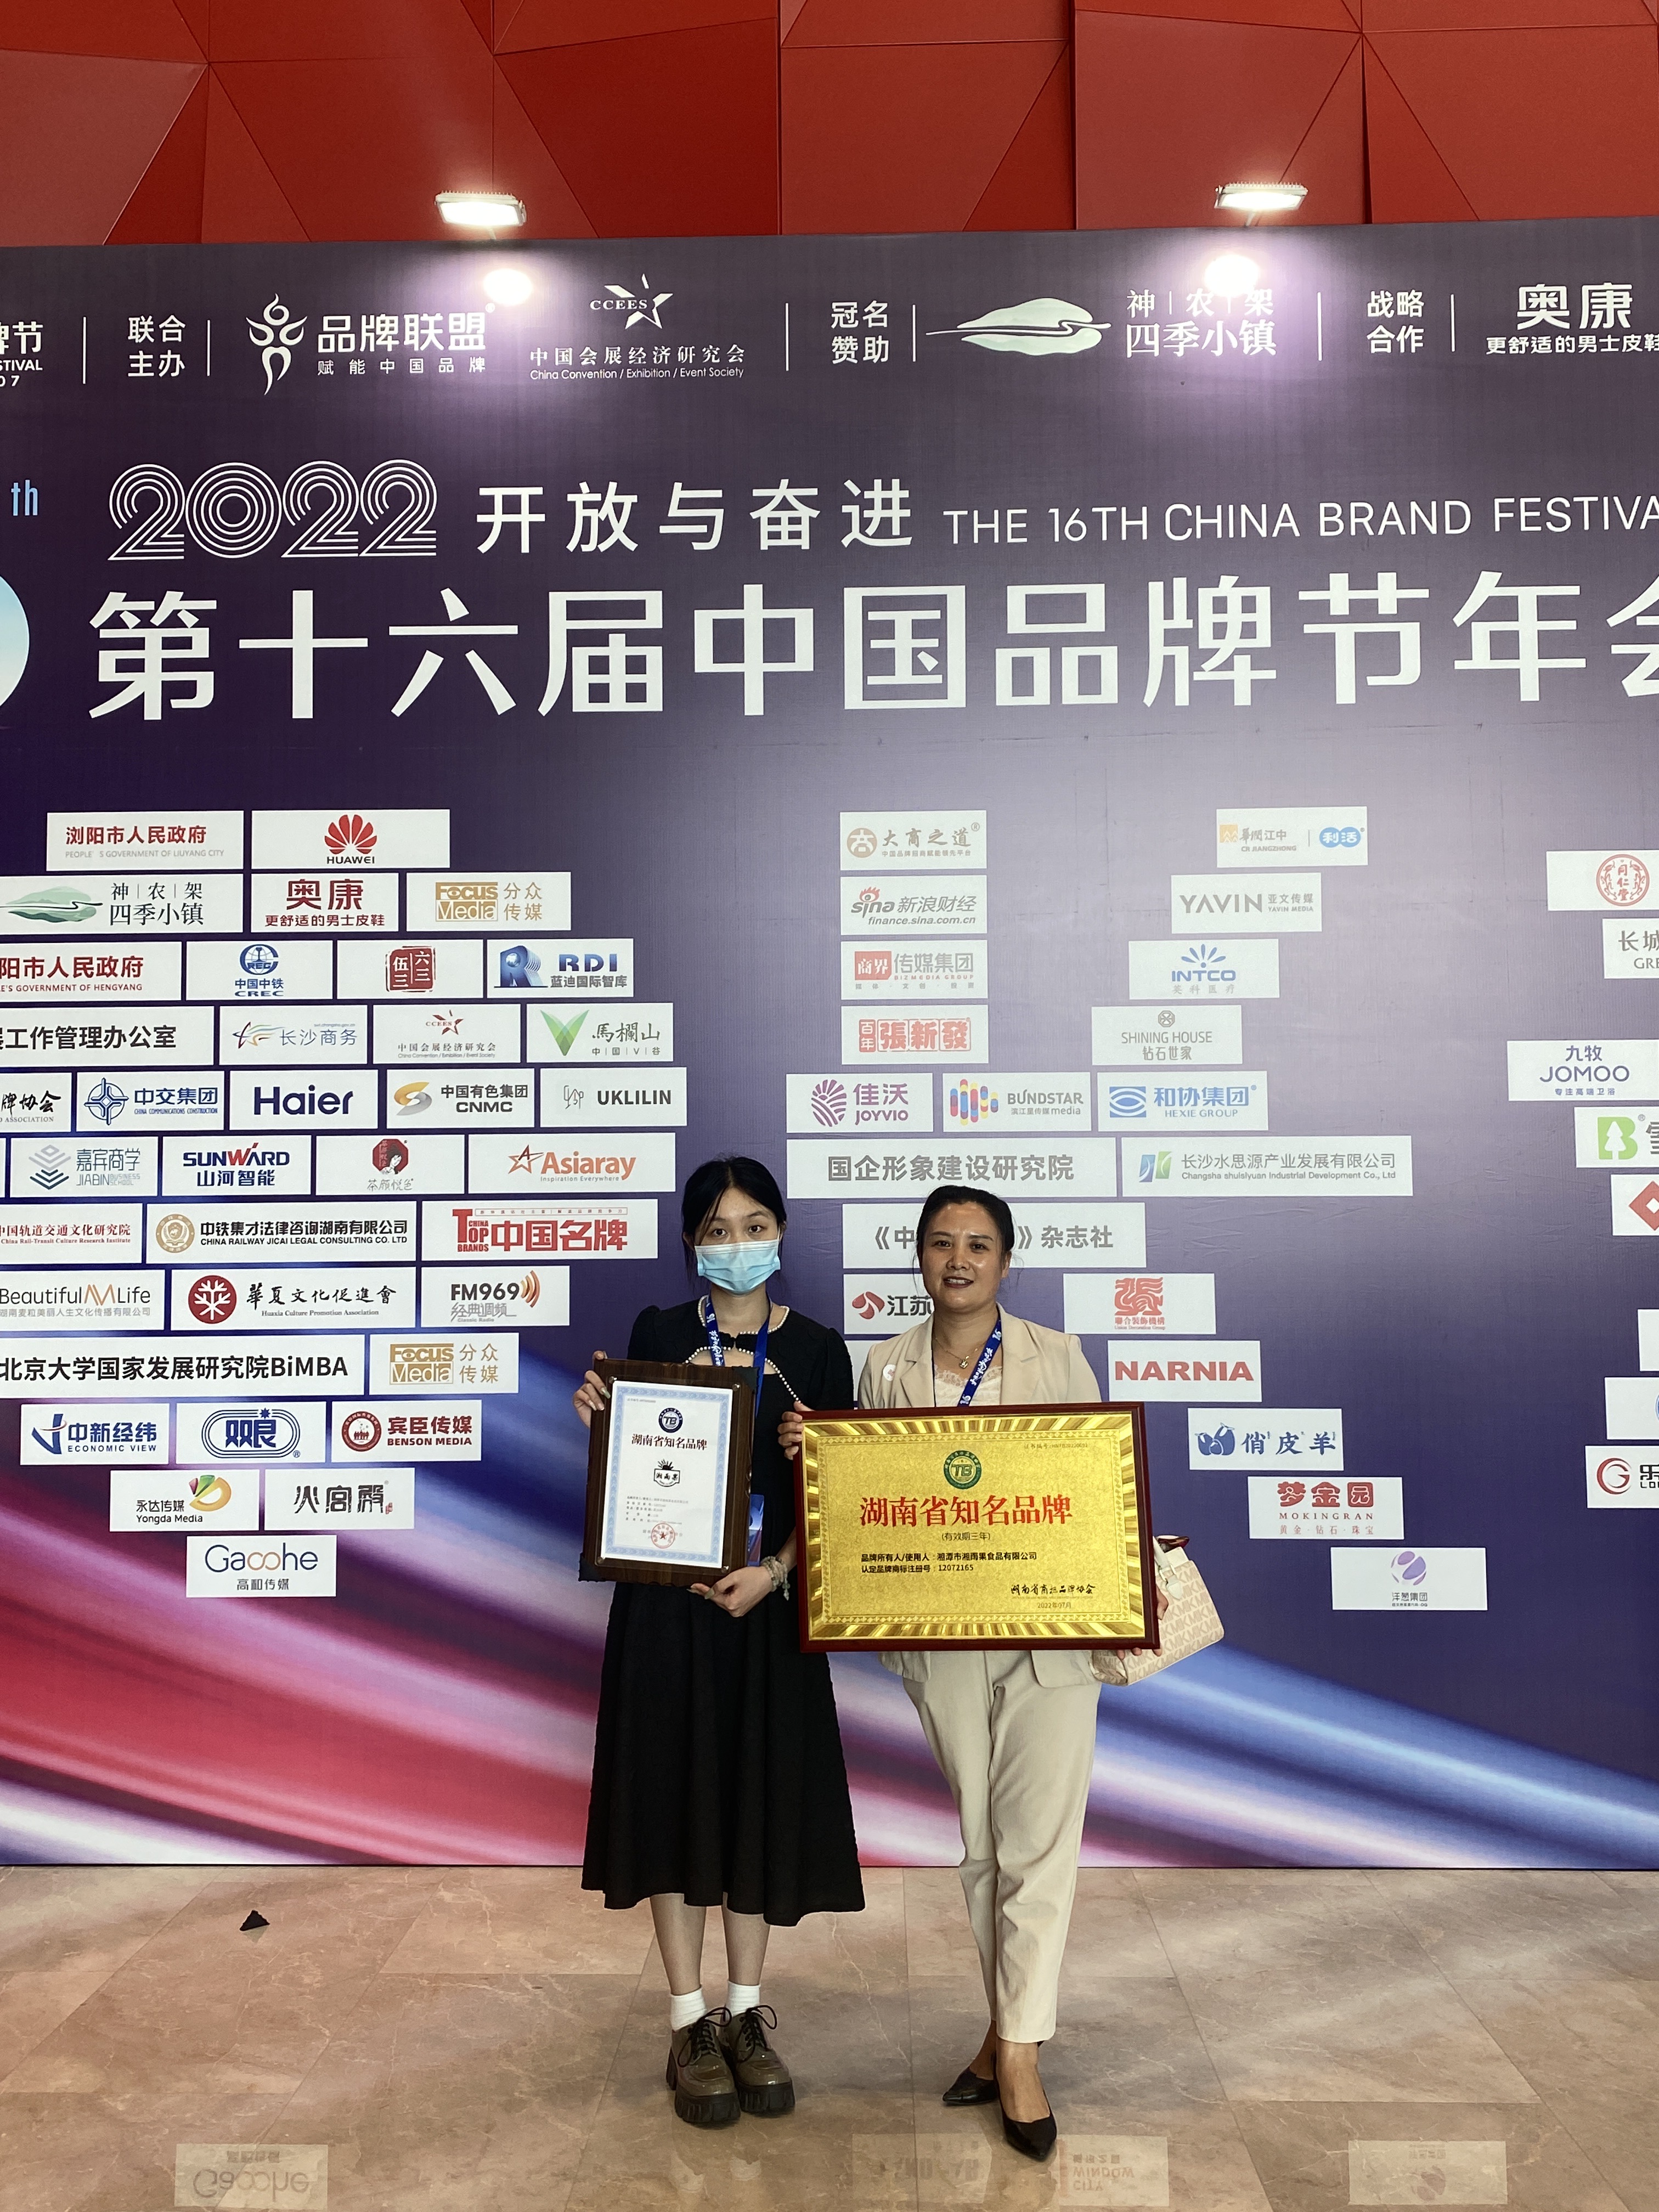 Az előfőzött ételek gyártója, a Xiang Yu Guo elnyerte a Hunan híres márkáját